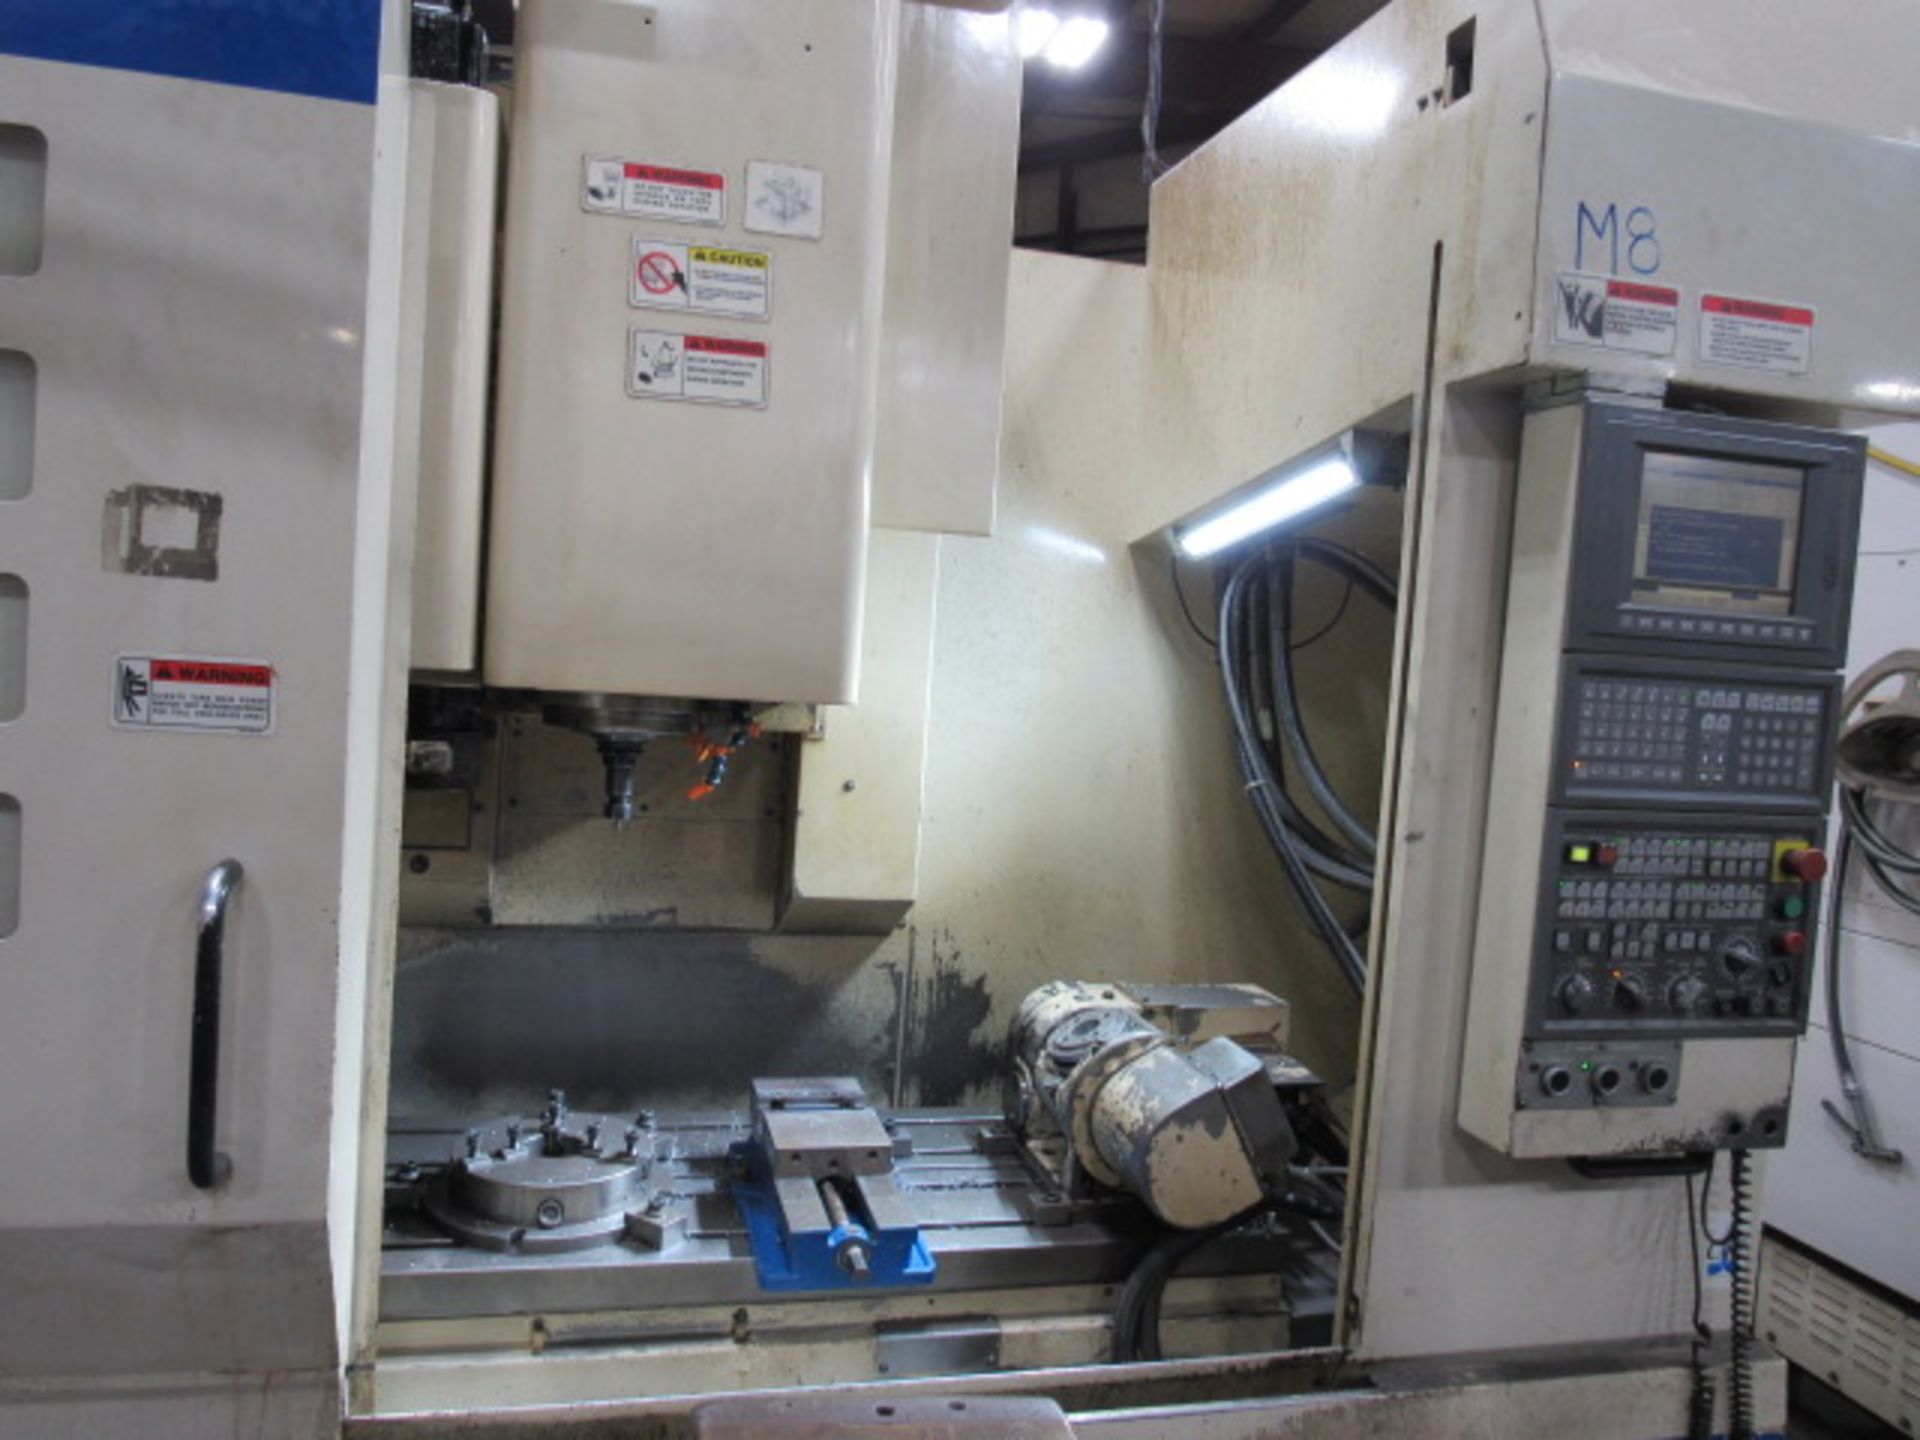 Okuma MC-V4020 5 Axis CNC Vertical Machining Center - Image 12 of 18